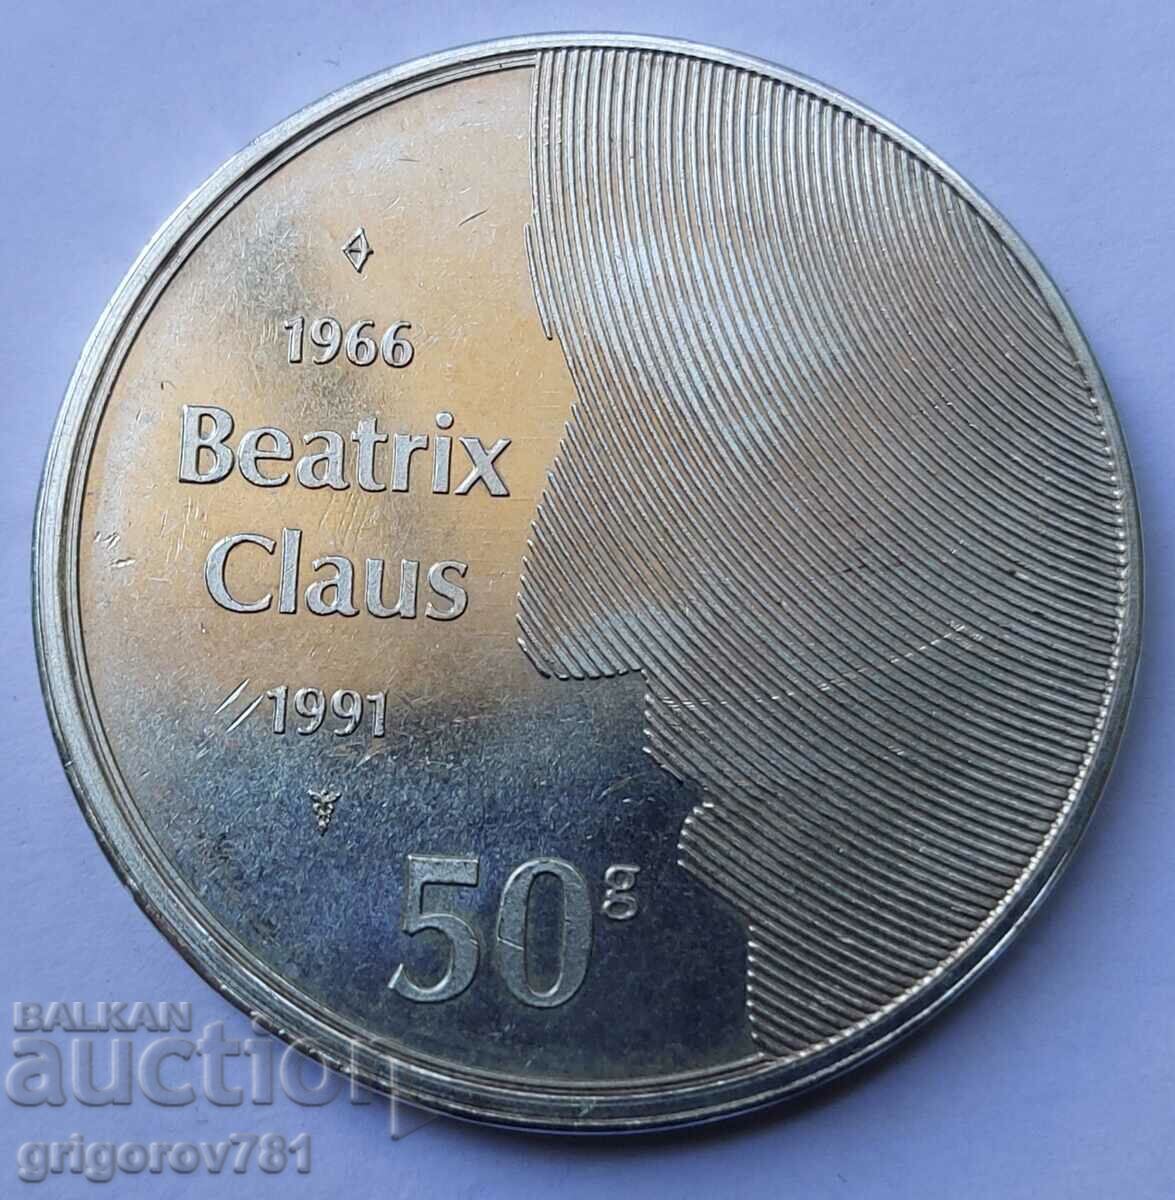 50 guldeni de argint Olanda 1991 - Moneda de argint #10